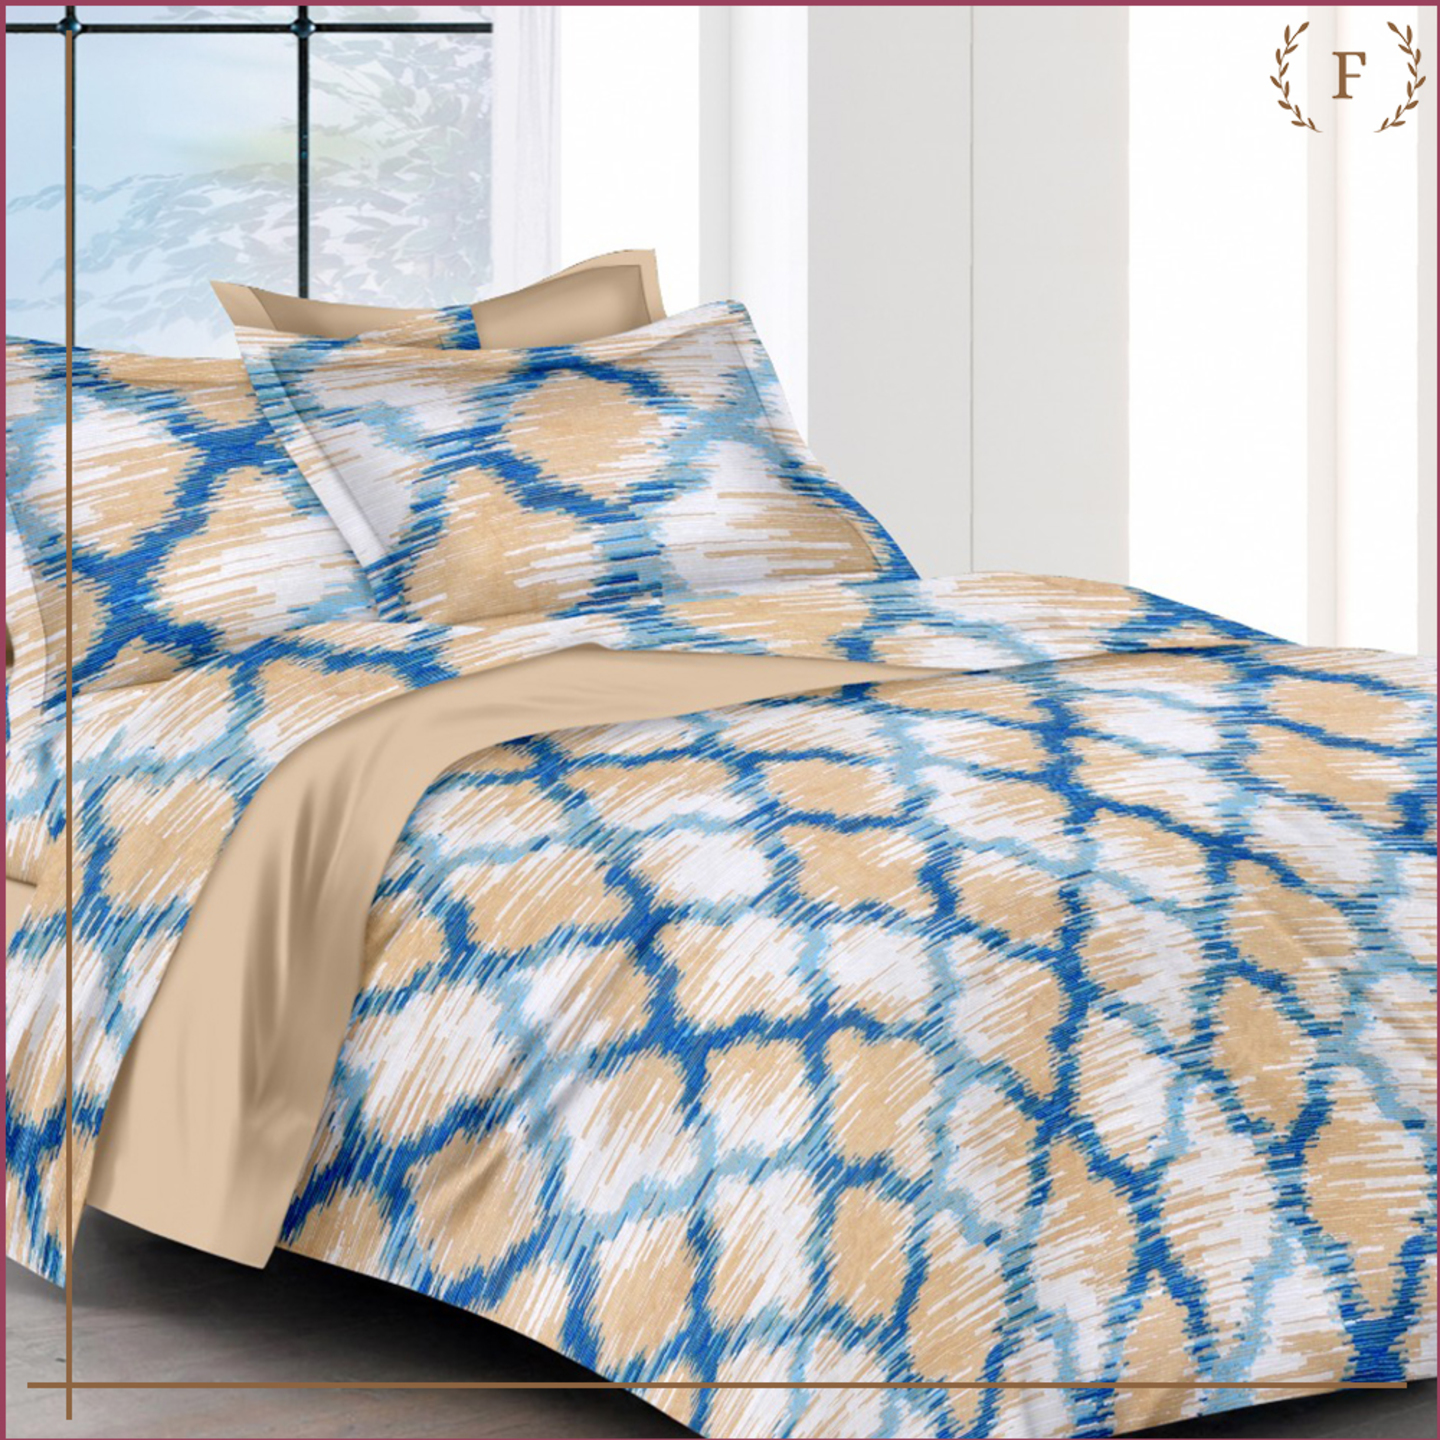 100 CottonDouble Bed SheetPure Cotton